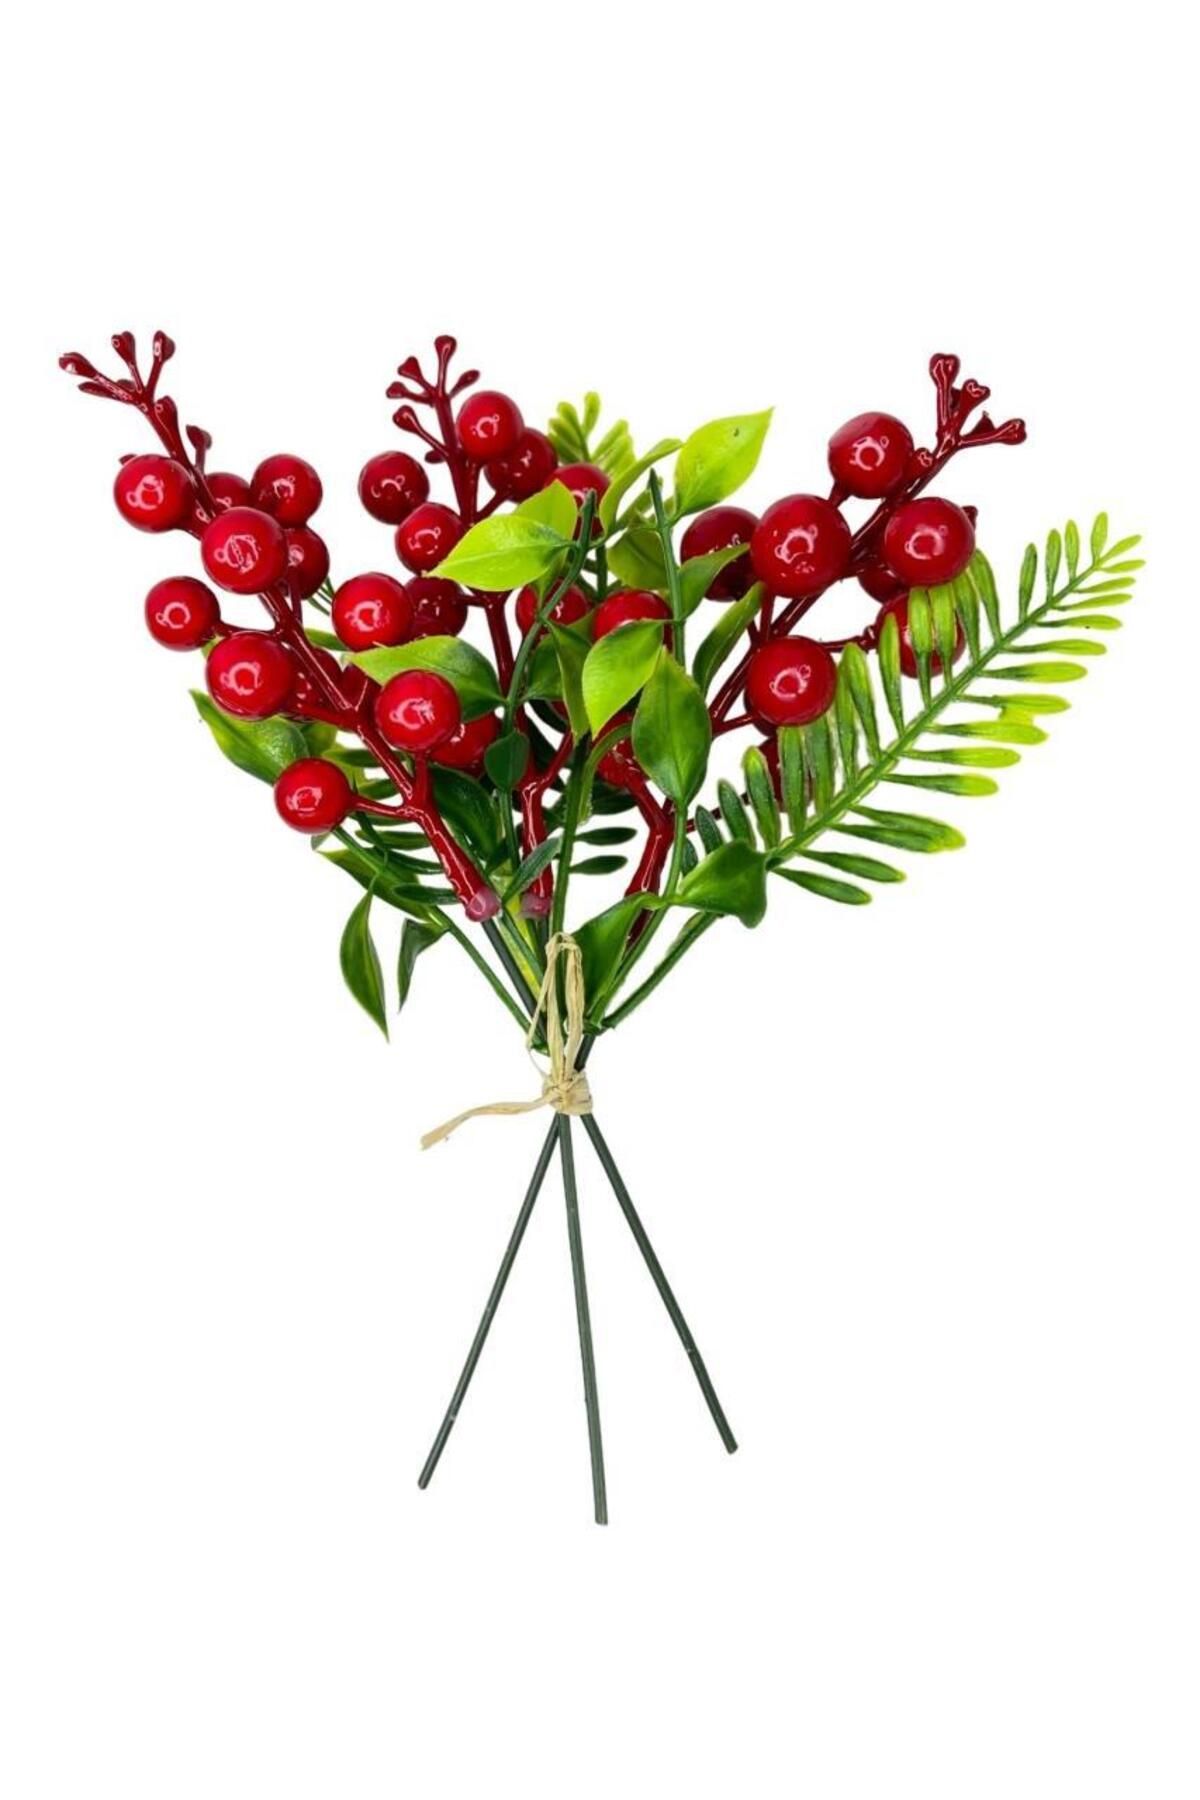 Nettenevime Yapay Çiçek Kokina 3 Dal Lı Demet 20*15cm Yılbaşı Çiçeği Red Berry